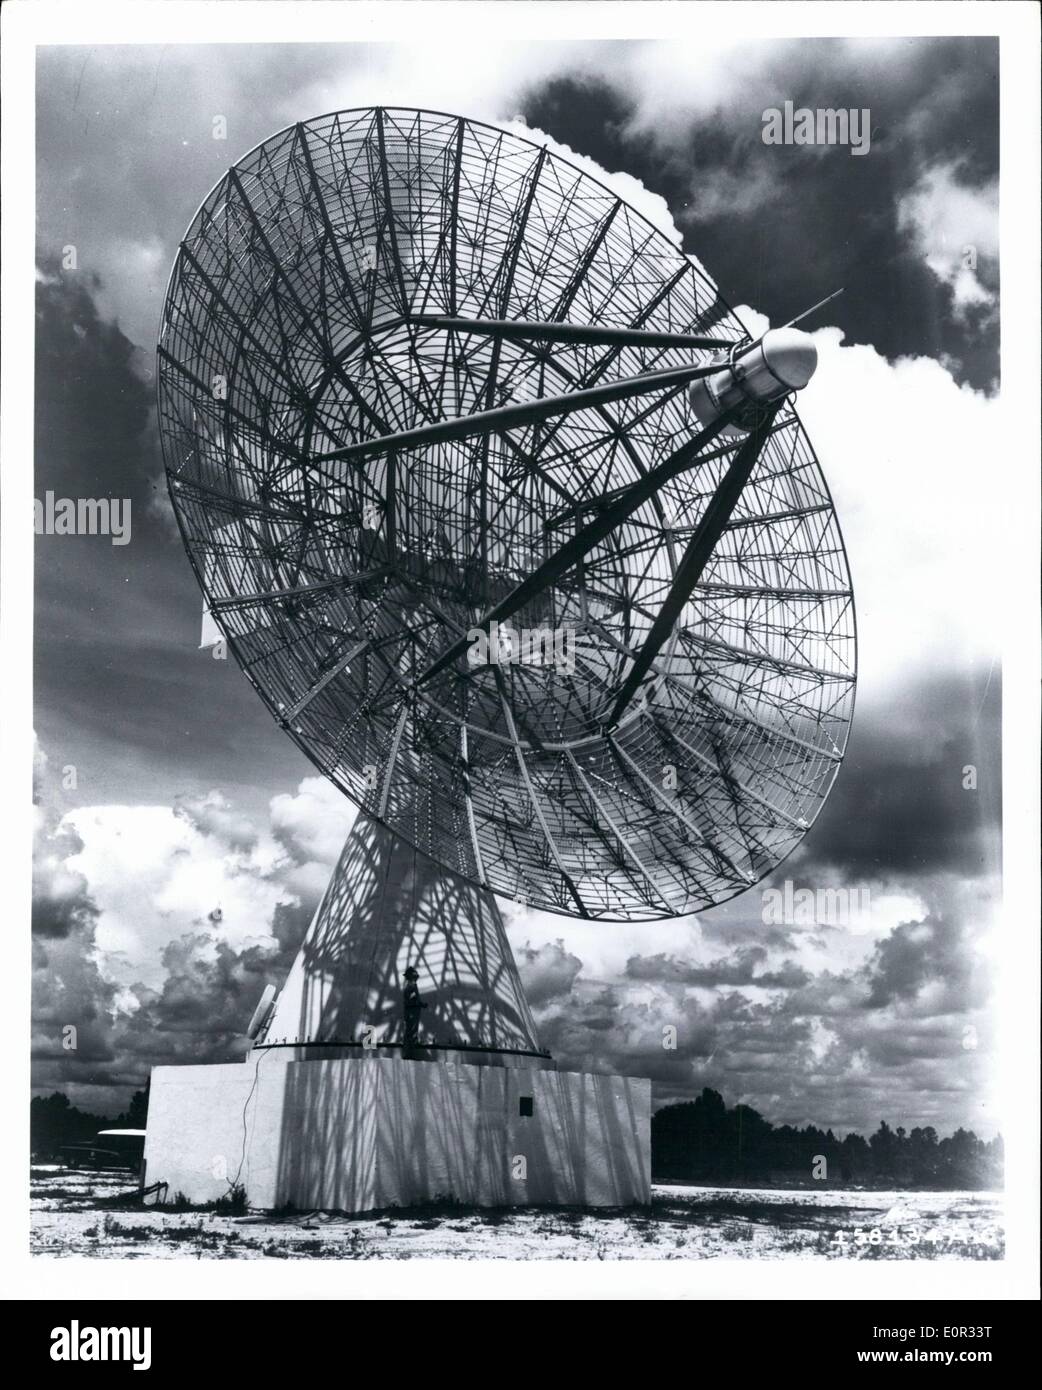 Gen 01, 1958 - STATI UNITI Air Force è di nuovo di tracking automatico di antenna di telemetria, designato TLM-18, torri superiore a sette piani in corrispondenza della sua posizione, Melbourne Florida. 60-piede web-come antenna, creduto per essere il più grande del suo tipo in esistenza, è uno dei cinque essendo costruito per la Air Force presso i siti lungo il 5.000 miglia intervallo di prova della Air Force Missile Test Center Caps Canaveral, Florida. L'apparecchiatura sarà utilizzata per tenere traccia dei missili balistici, e coprirà tutta la gamma con una moderata quantità di sovrapposizione tra l'installazione di antenna Foto Stock